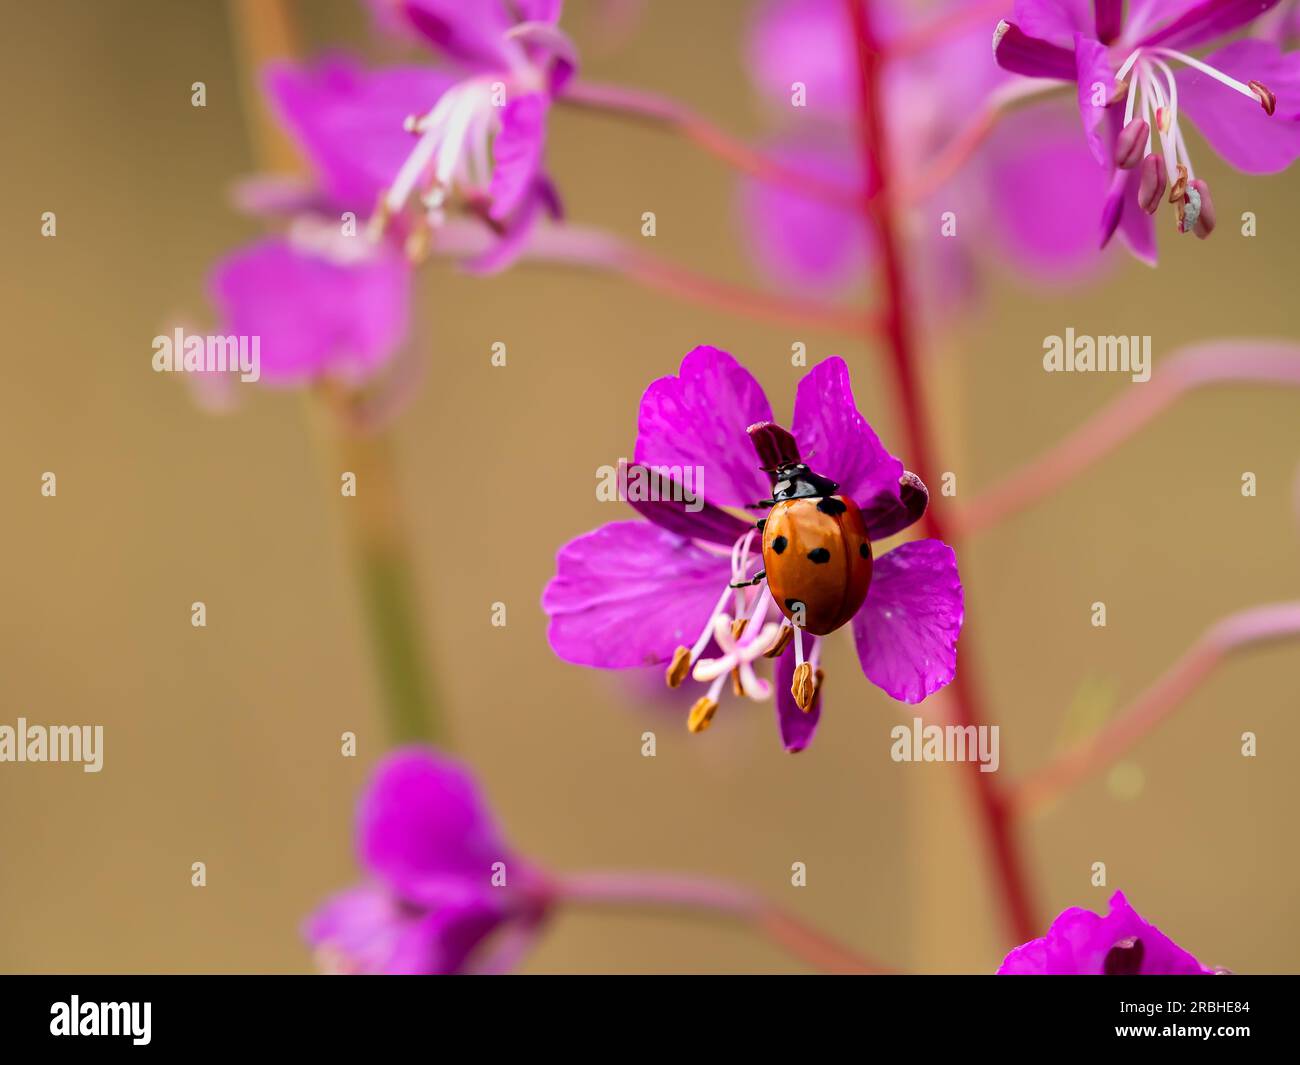 Ladybug on Herbs Stock Photo